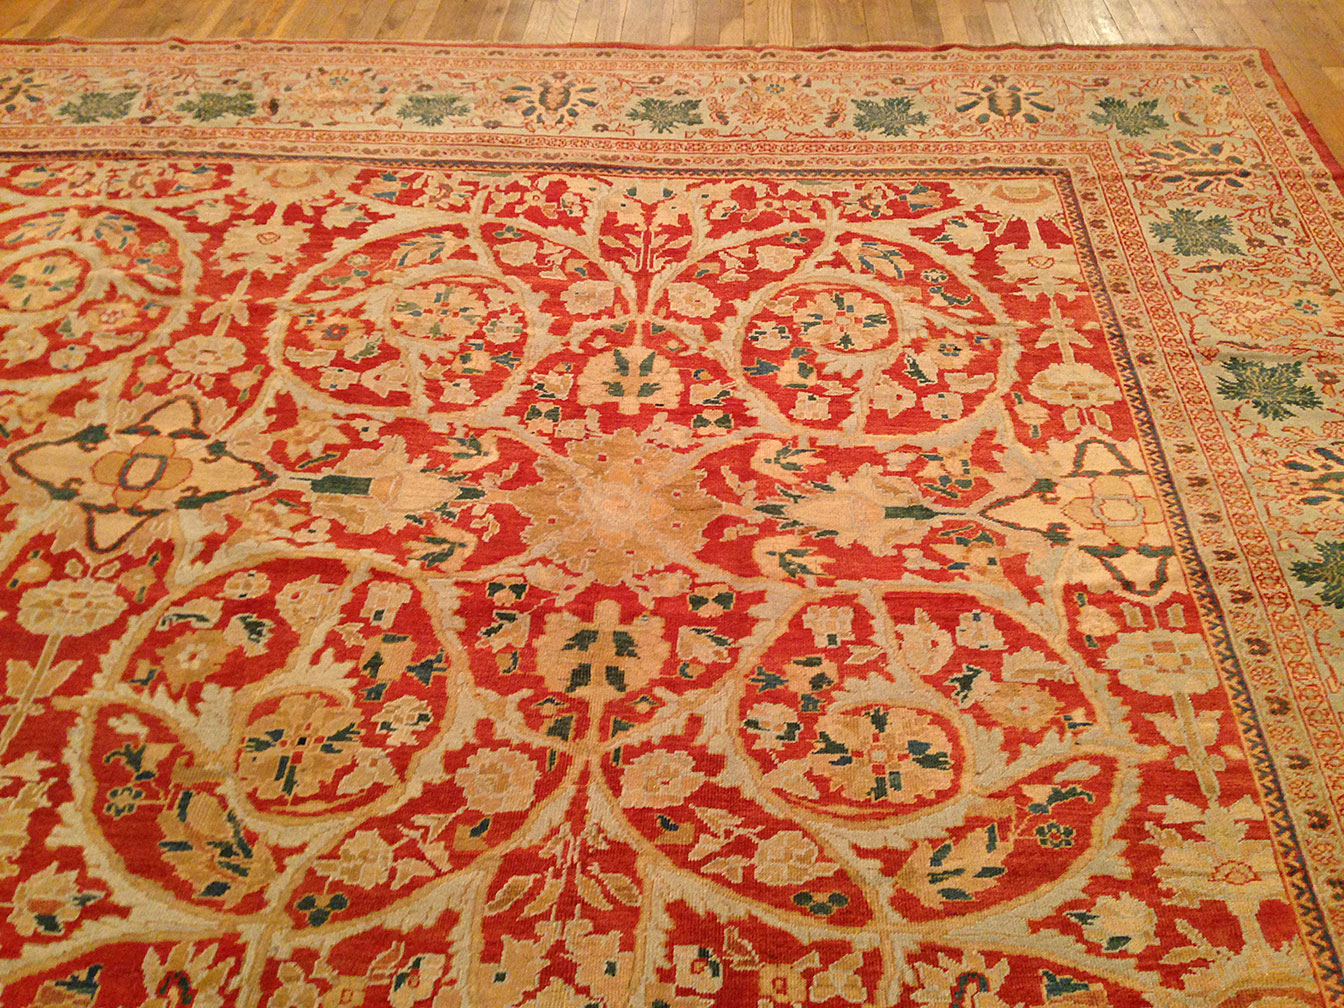 Antique sultan abad Carpet - # 9638